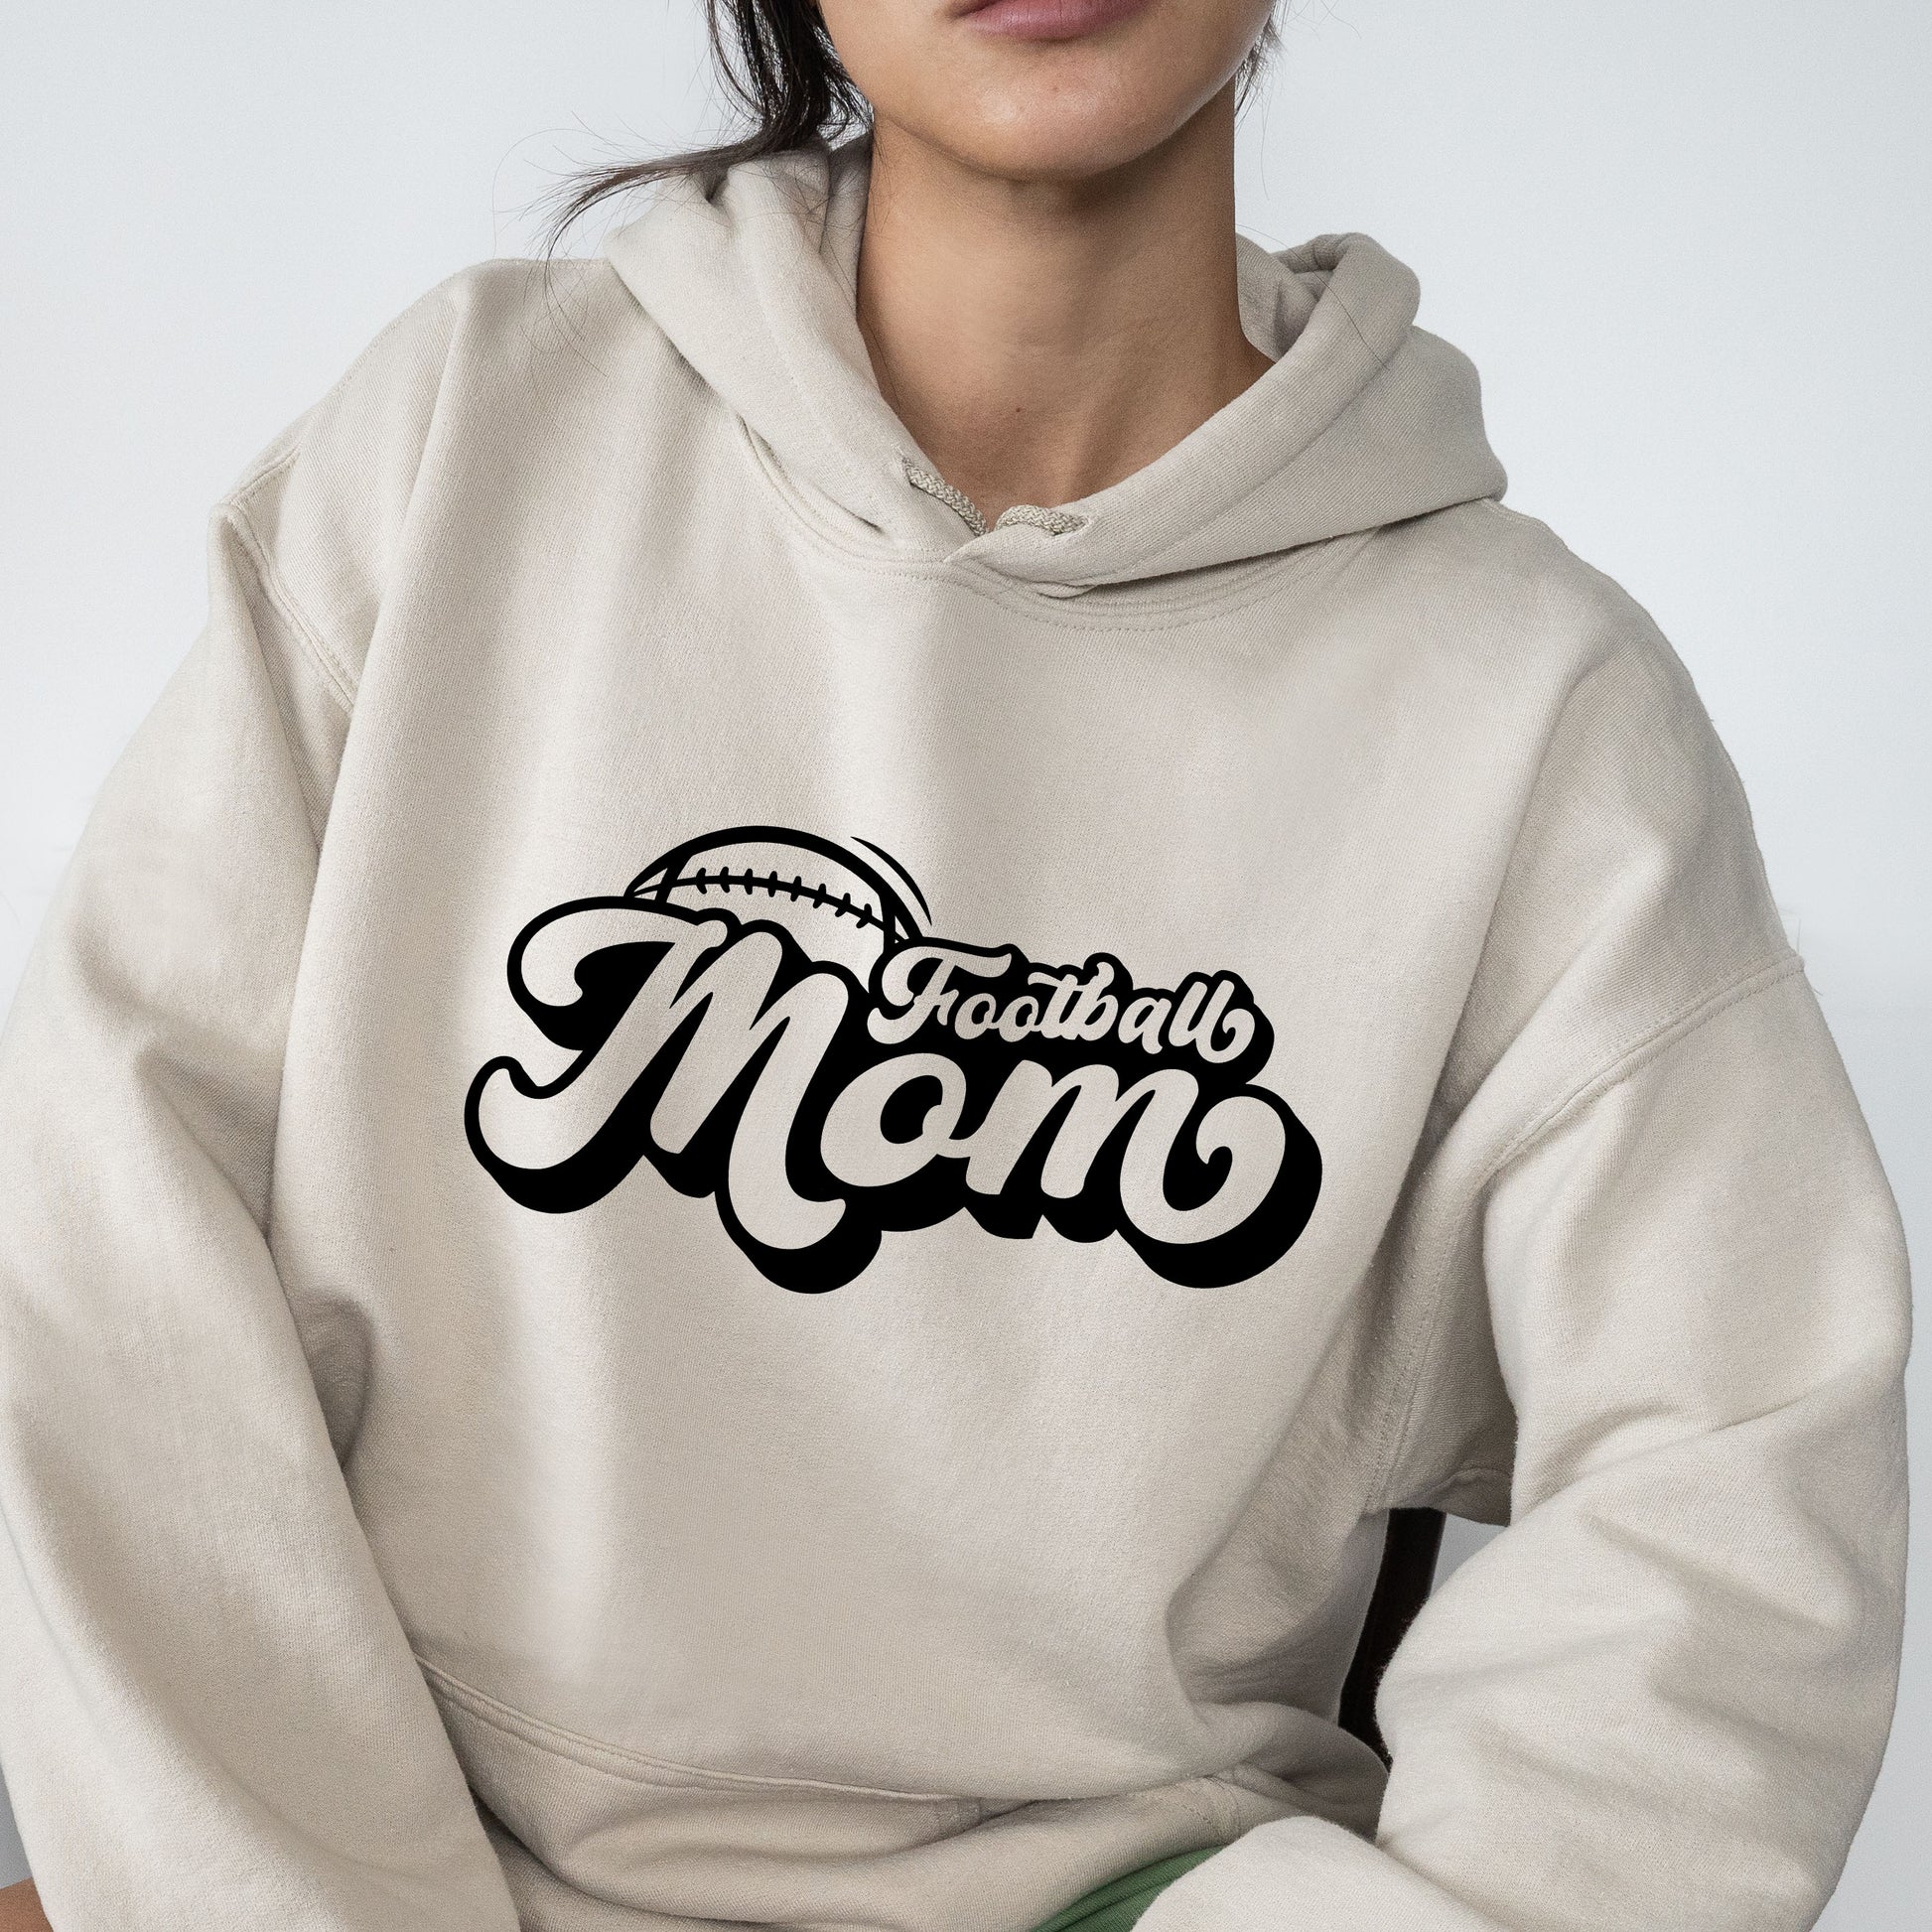 Football Retro Mom T-Shirt, Sweatshirt, or Hoodie